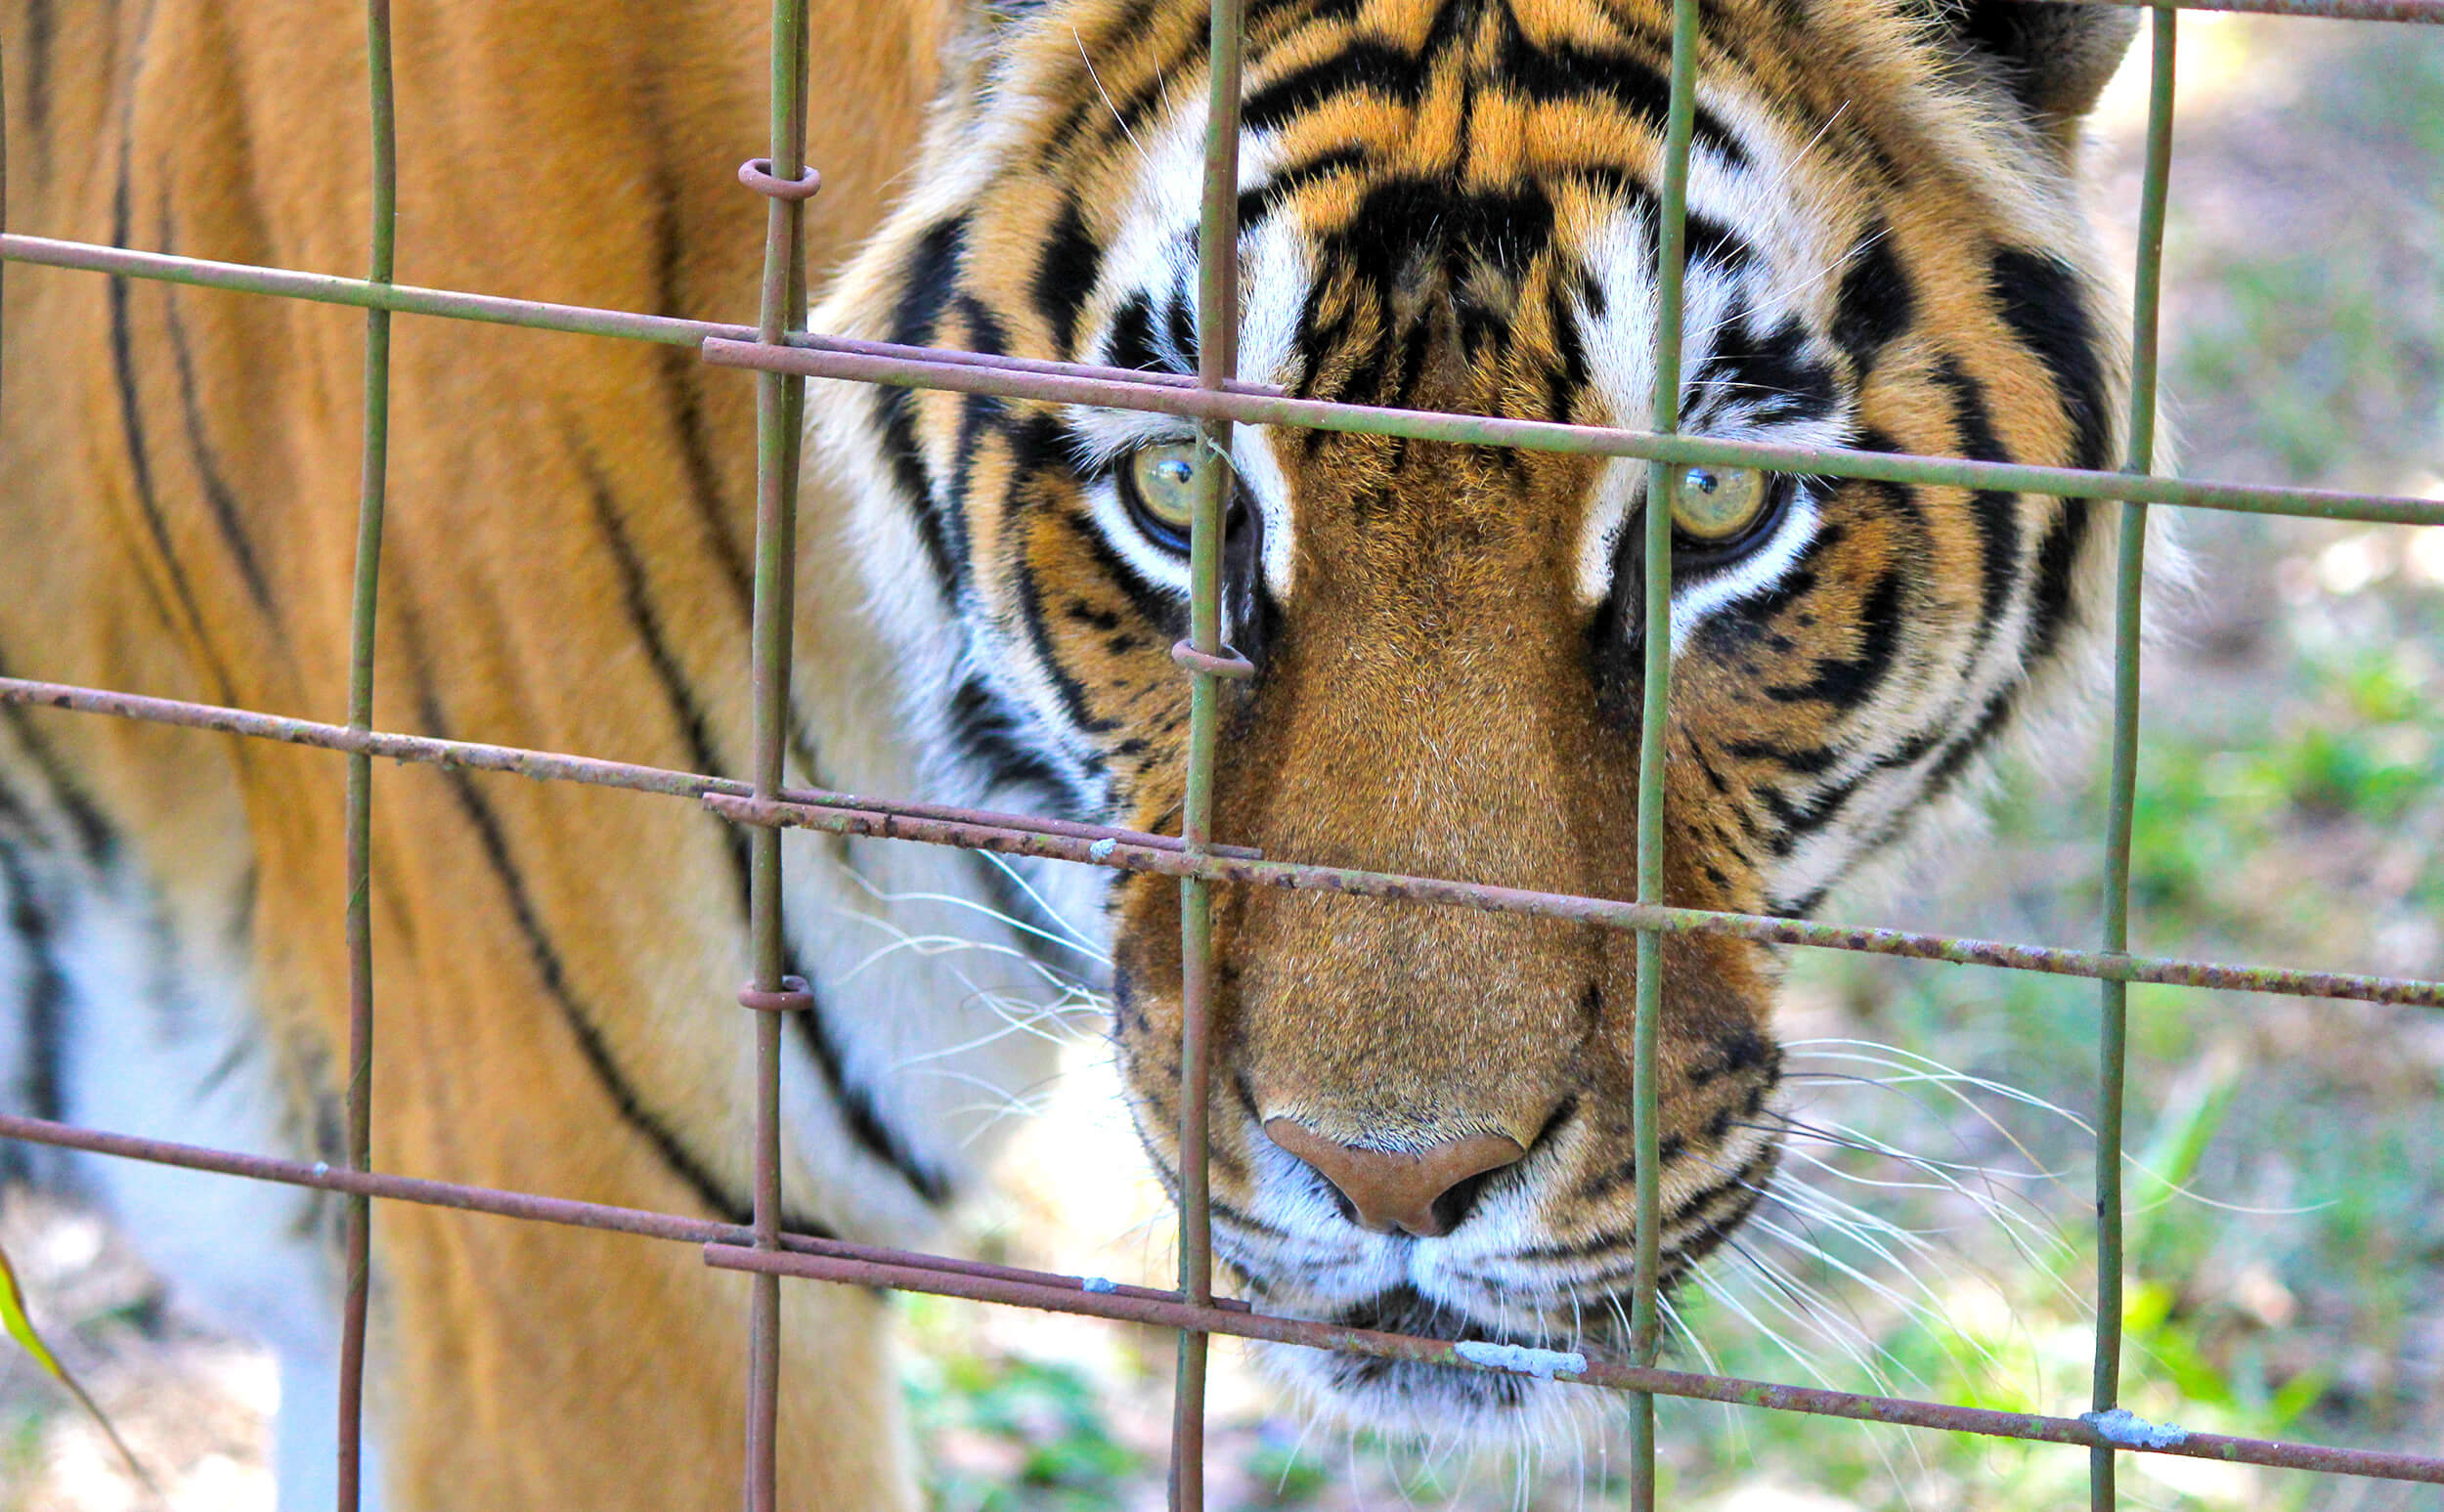 Caged Tiger.